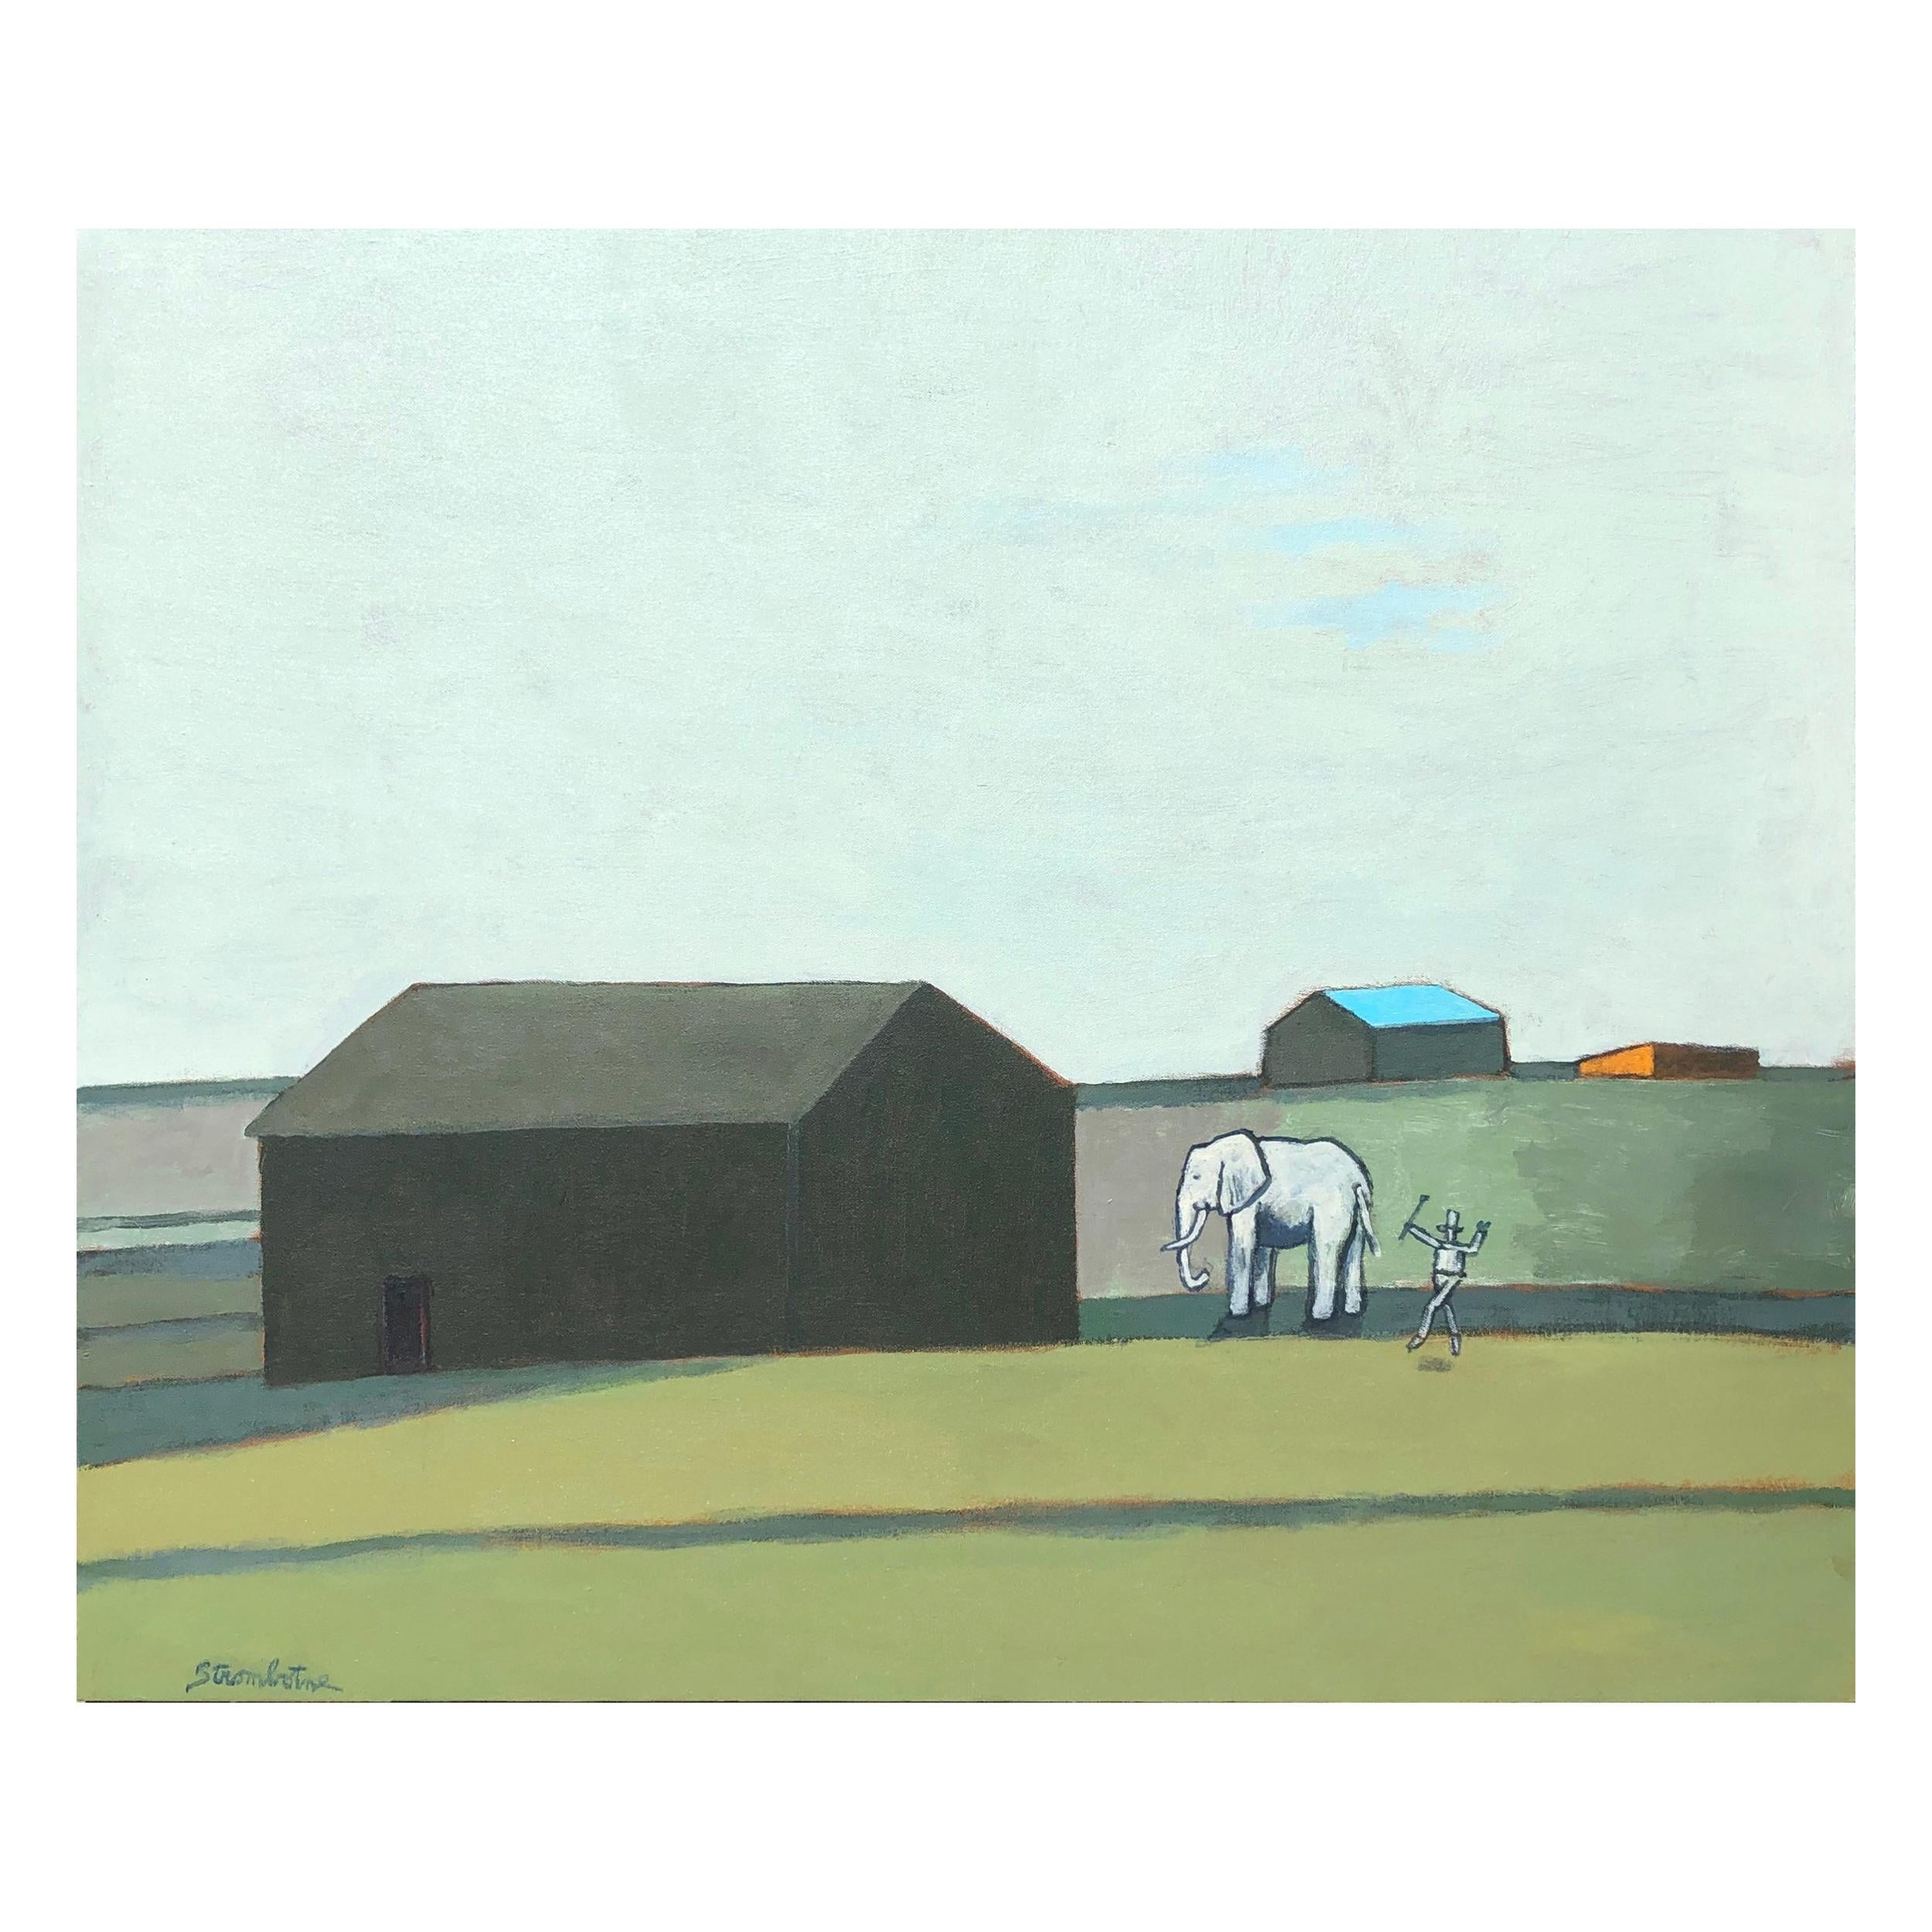 James Strombotne "My Elephant" Acrylic on Canvas Painting, 2018